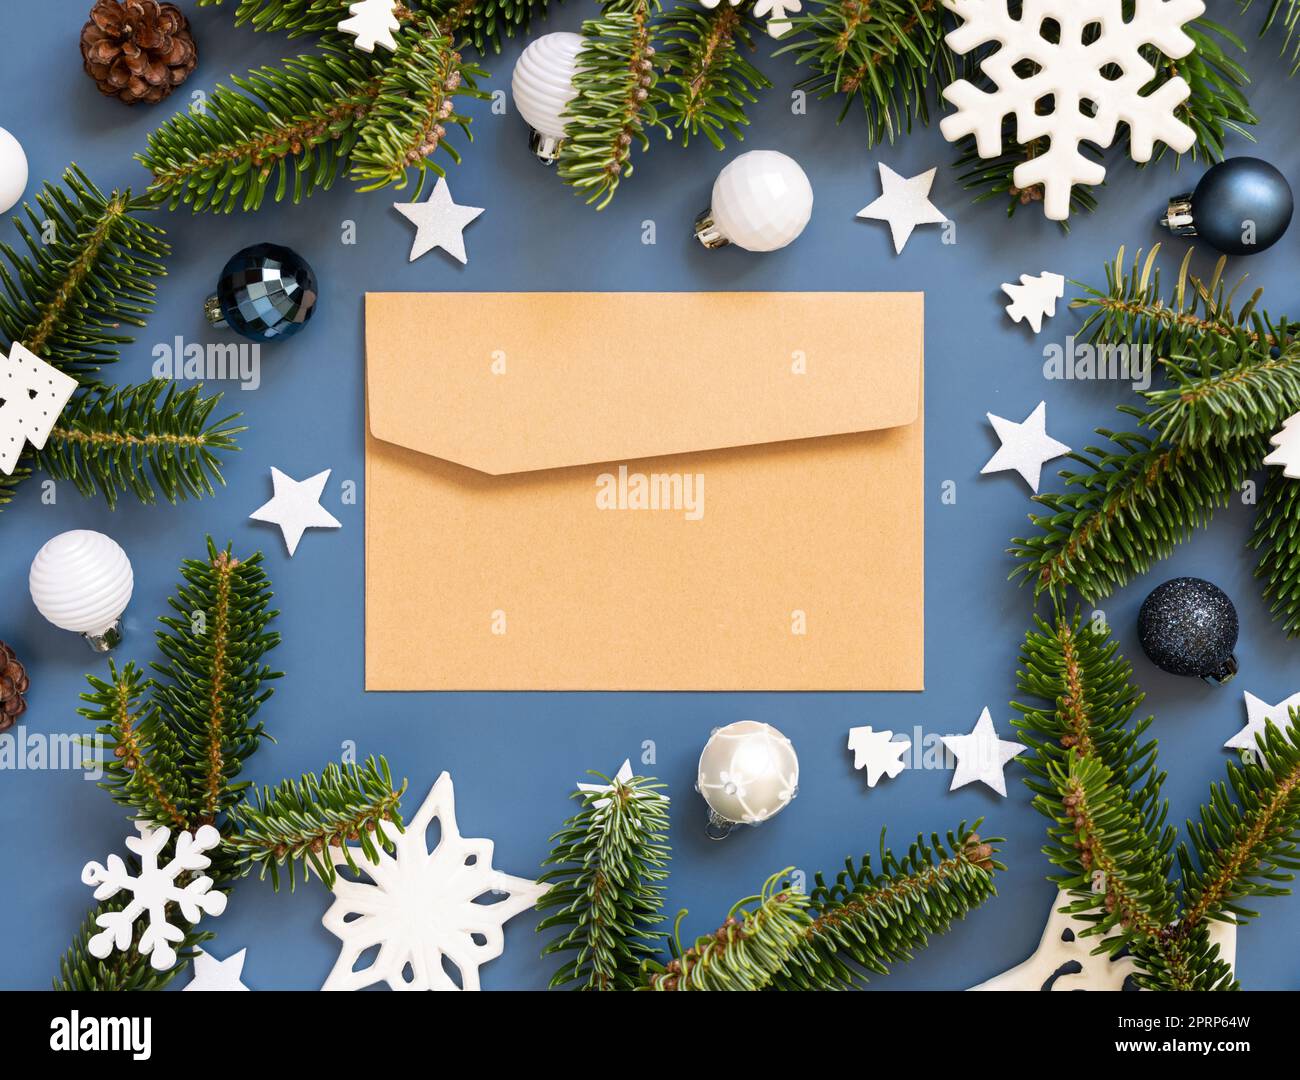 Enveloppe de papier artisanal sur fond bleu près des décorations de Noël blanches et des branches de sapin Banque D'Images